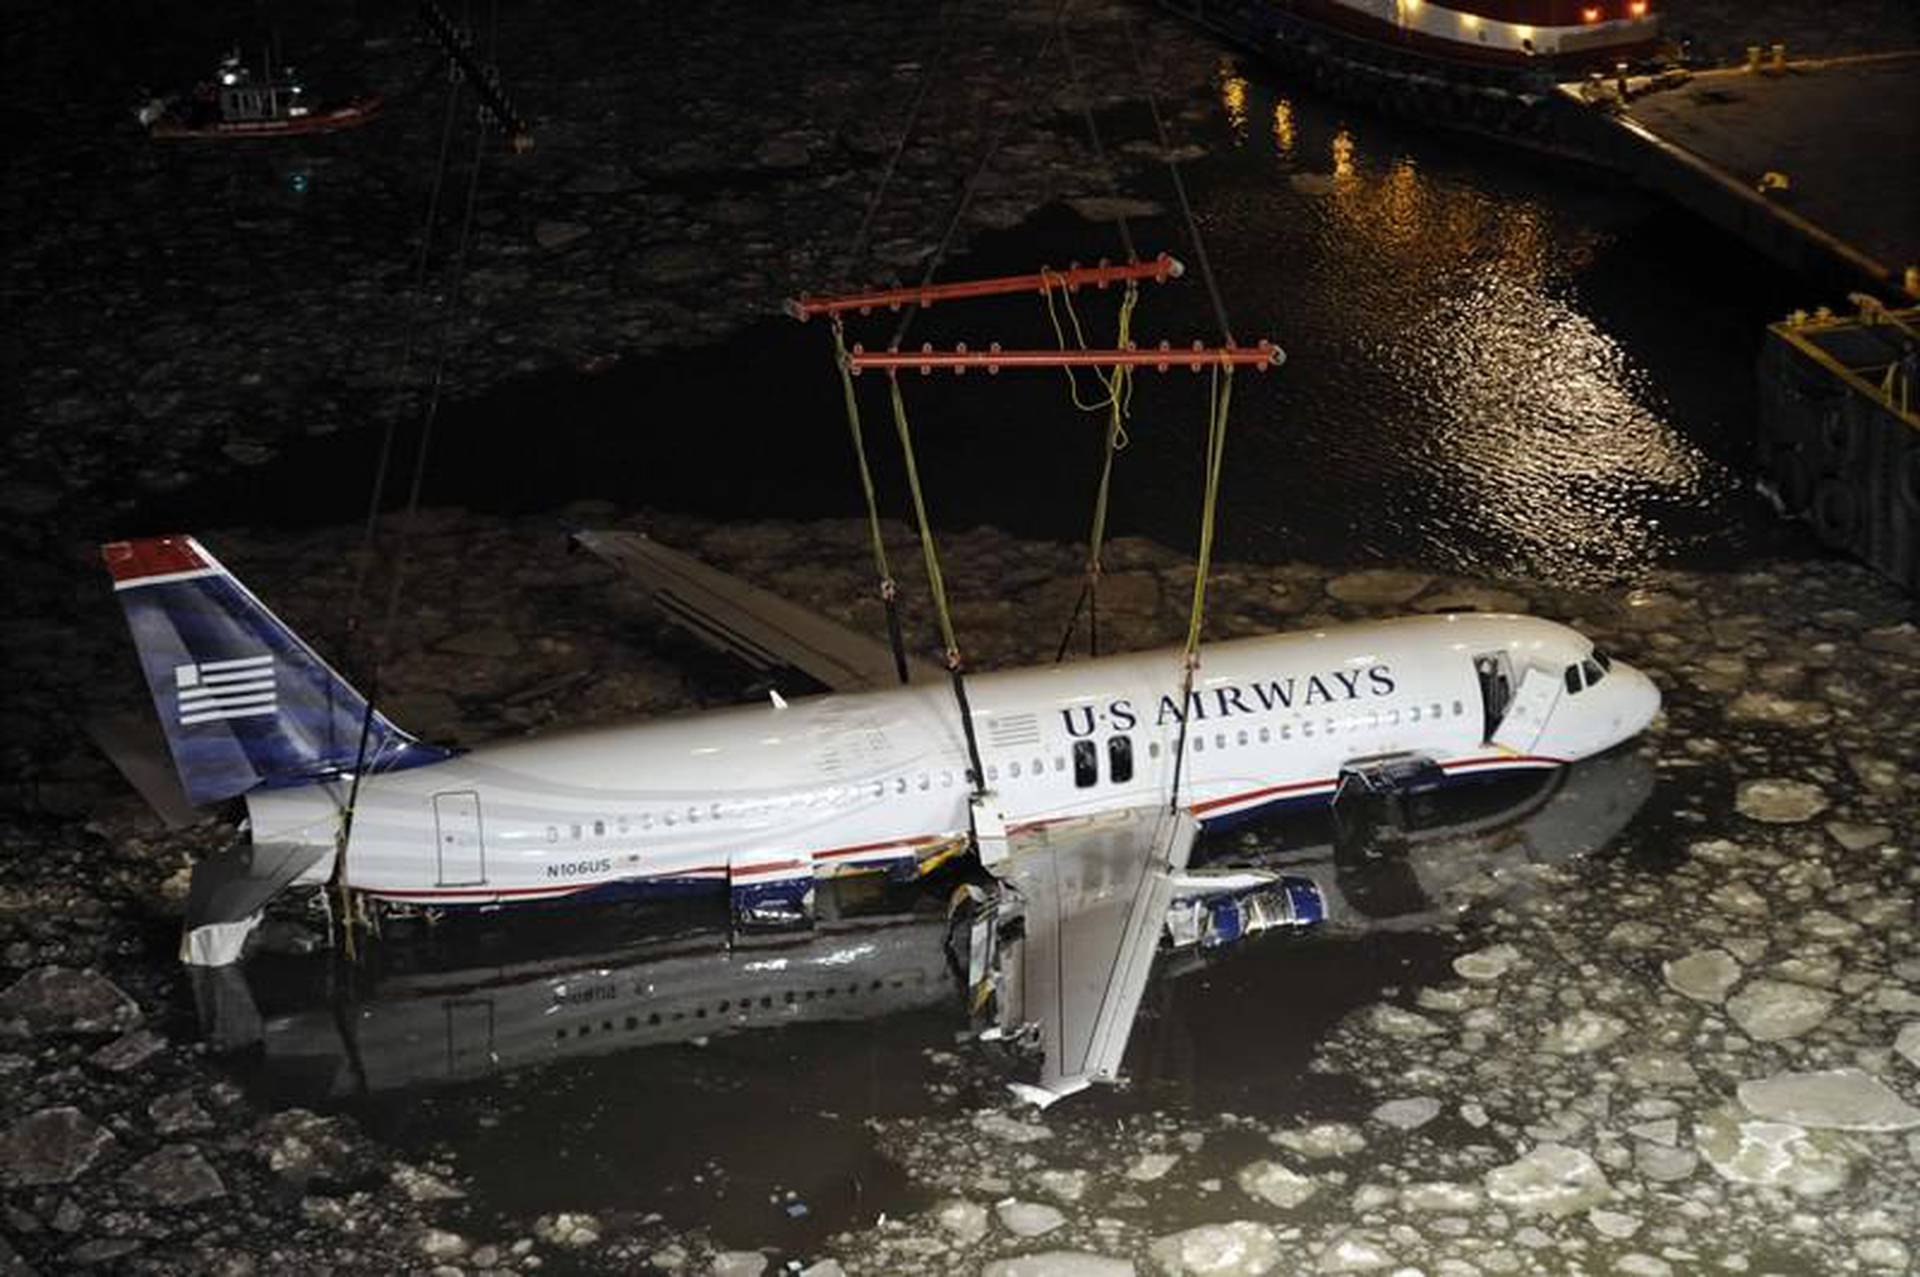 Hudson river plane crash. Аварийная посадка a320 на Гудзон. Гудзон 15 января 2009. Самолёт на Гудзоне 2009. Посадка а320 на Гудзон.